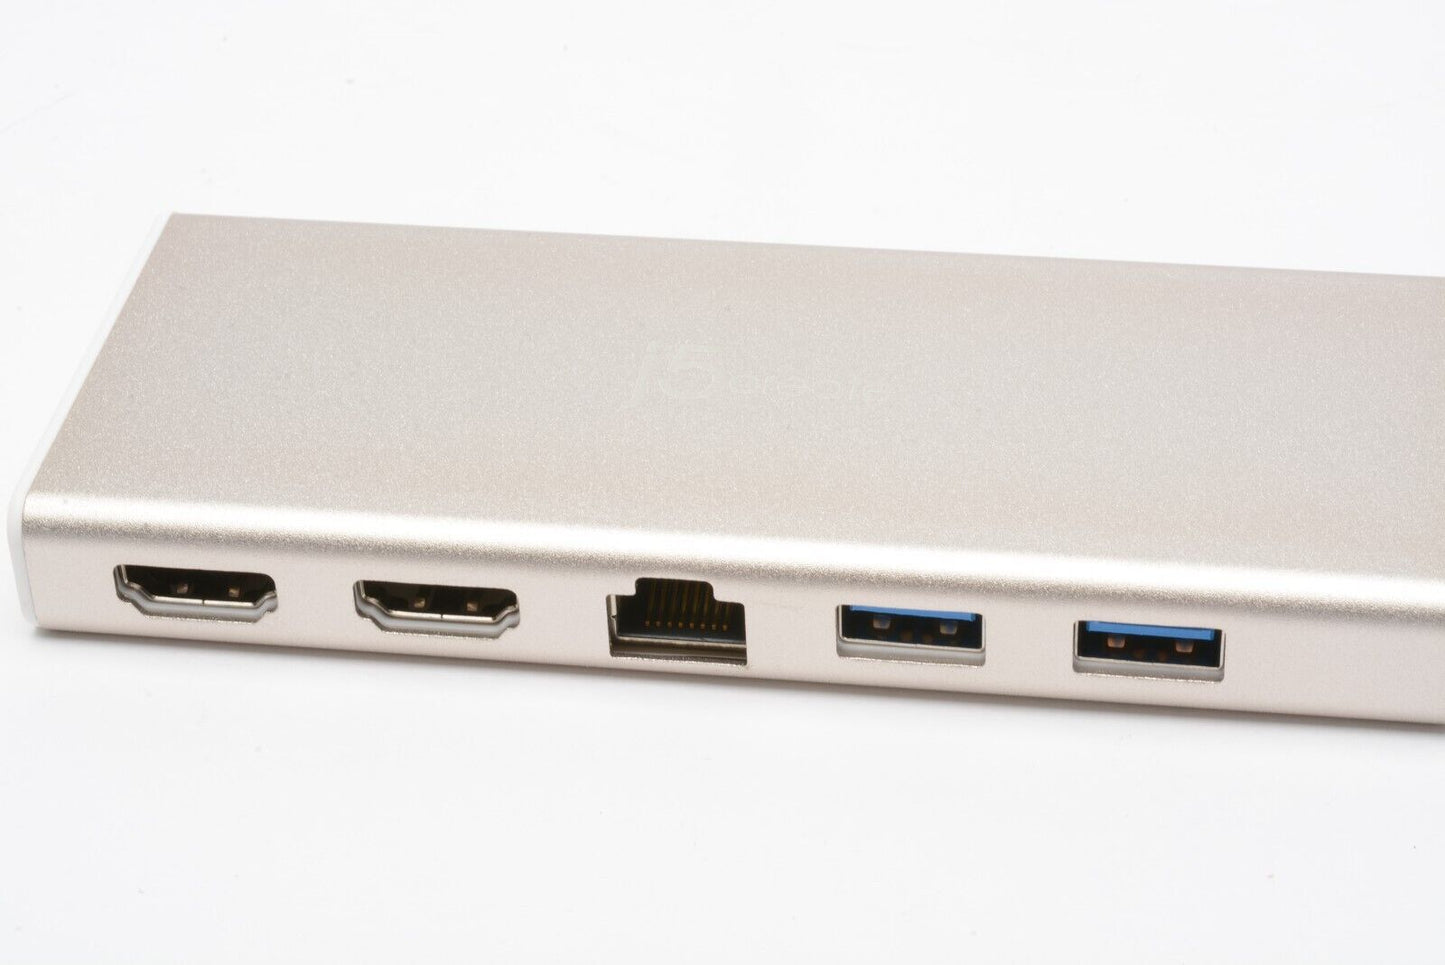 NEW j5CREATE JCD381 USB TYPE-C DUAL HDMI MINI DOCK ADAPTER